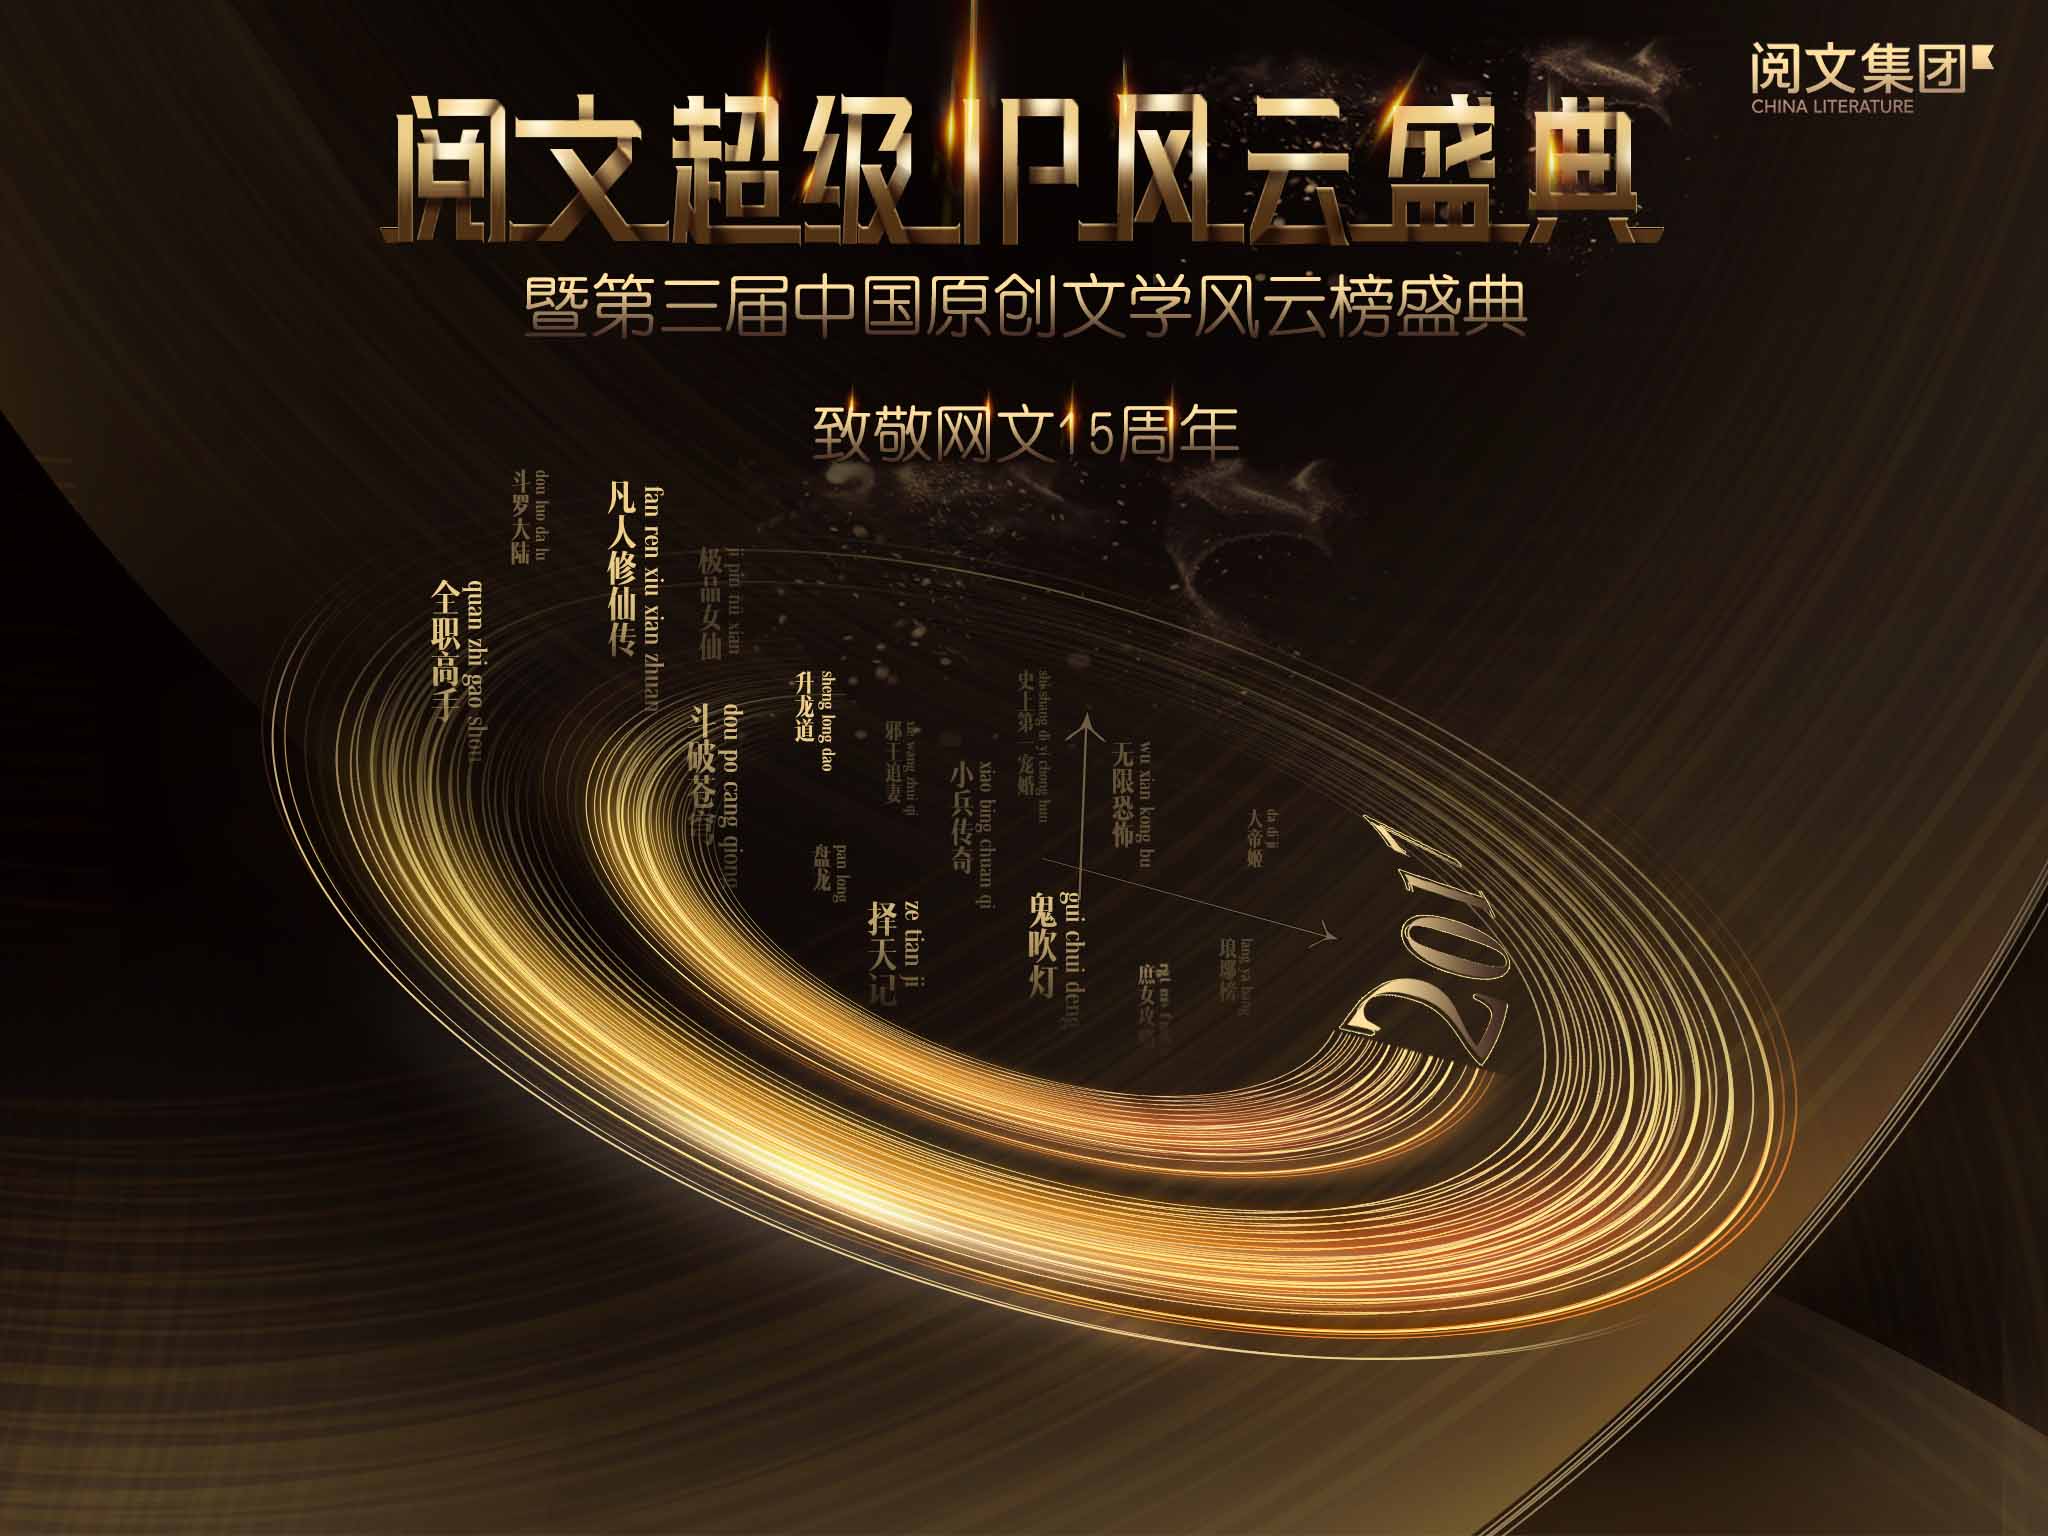 第三屆中國原創文學風雲榜盛典